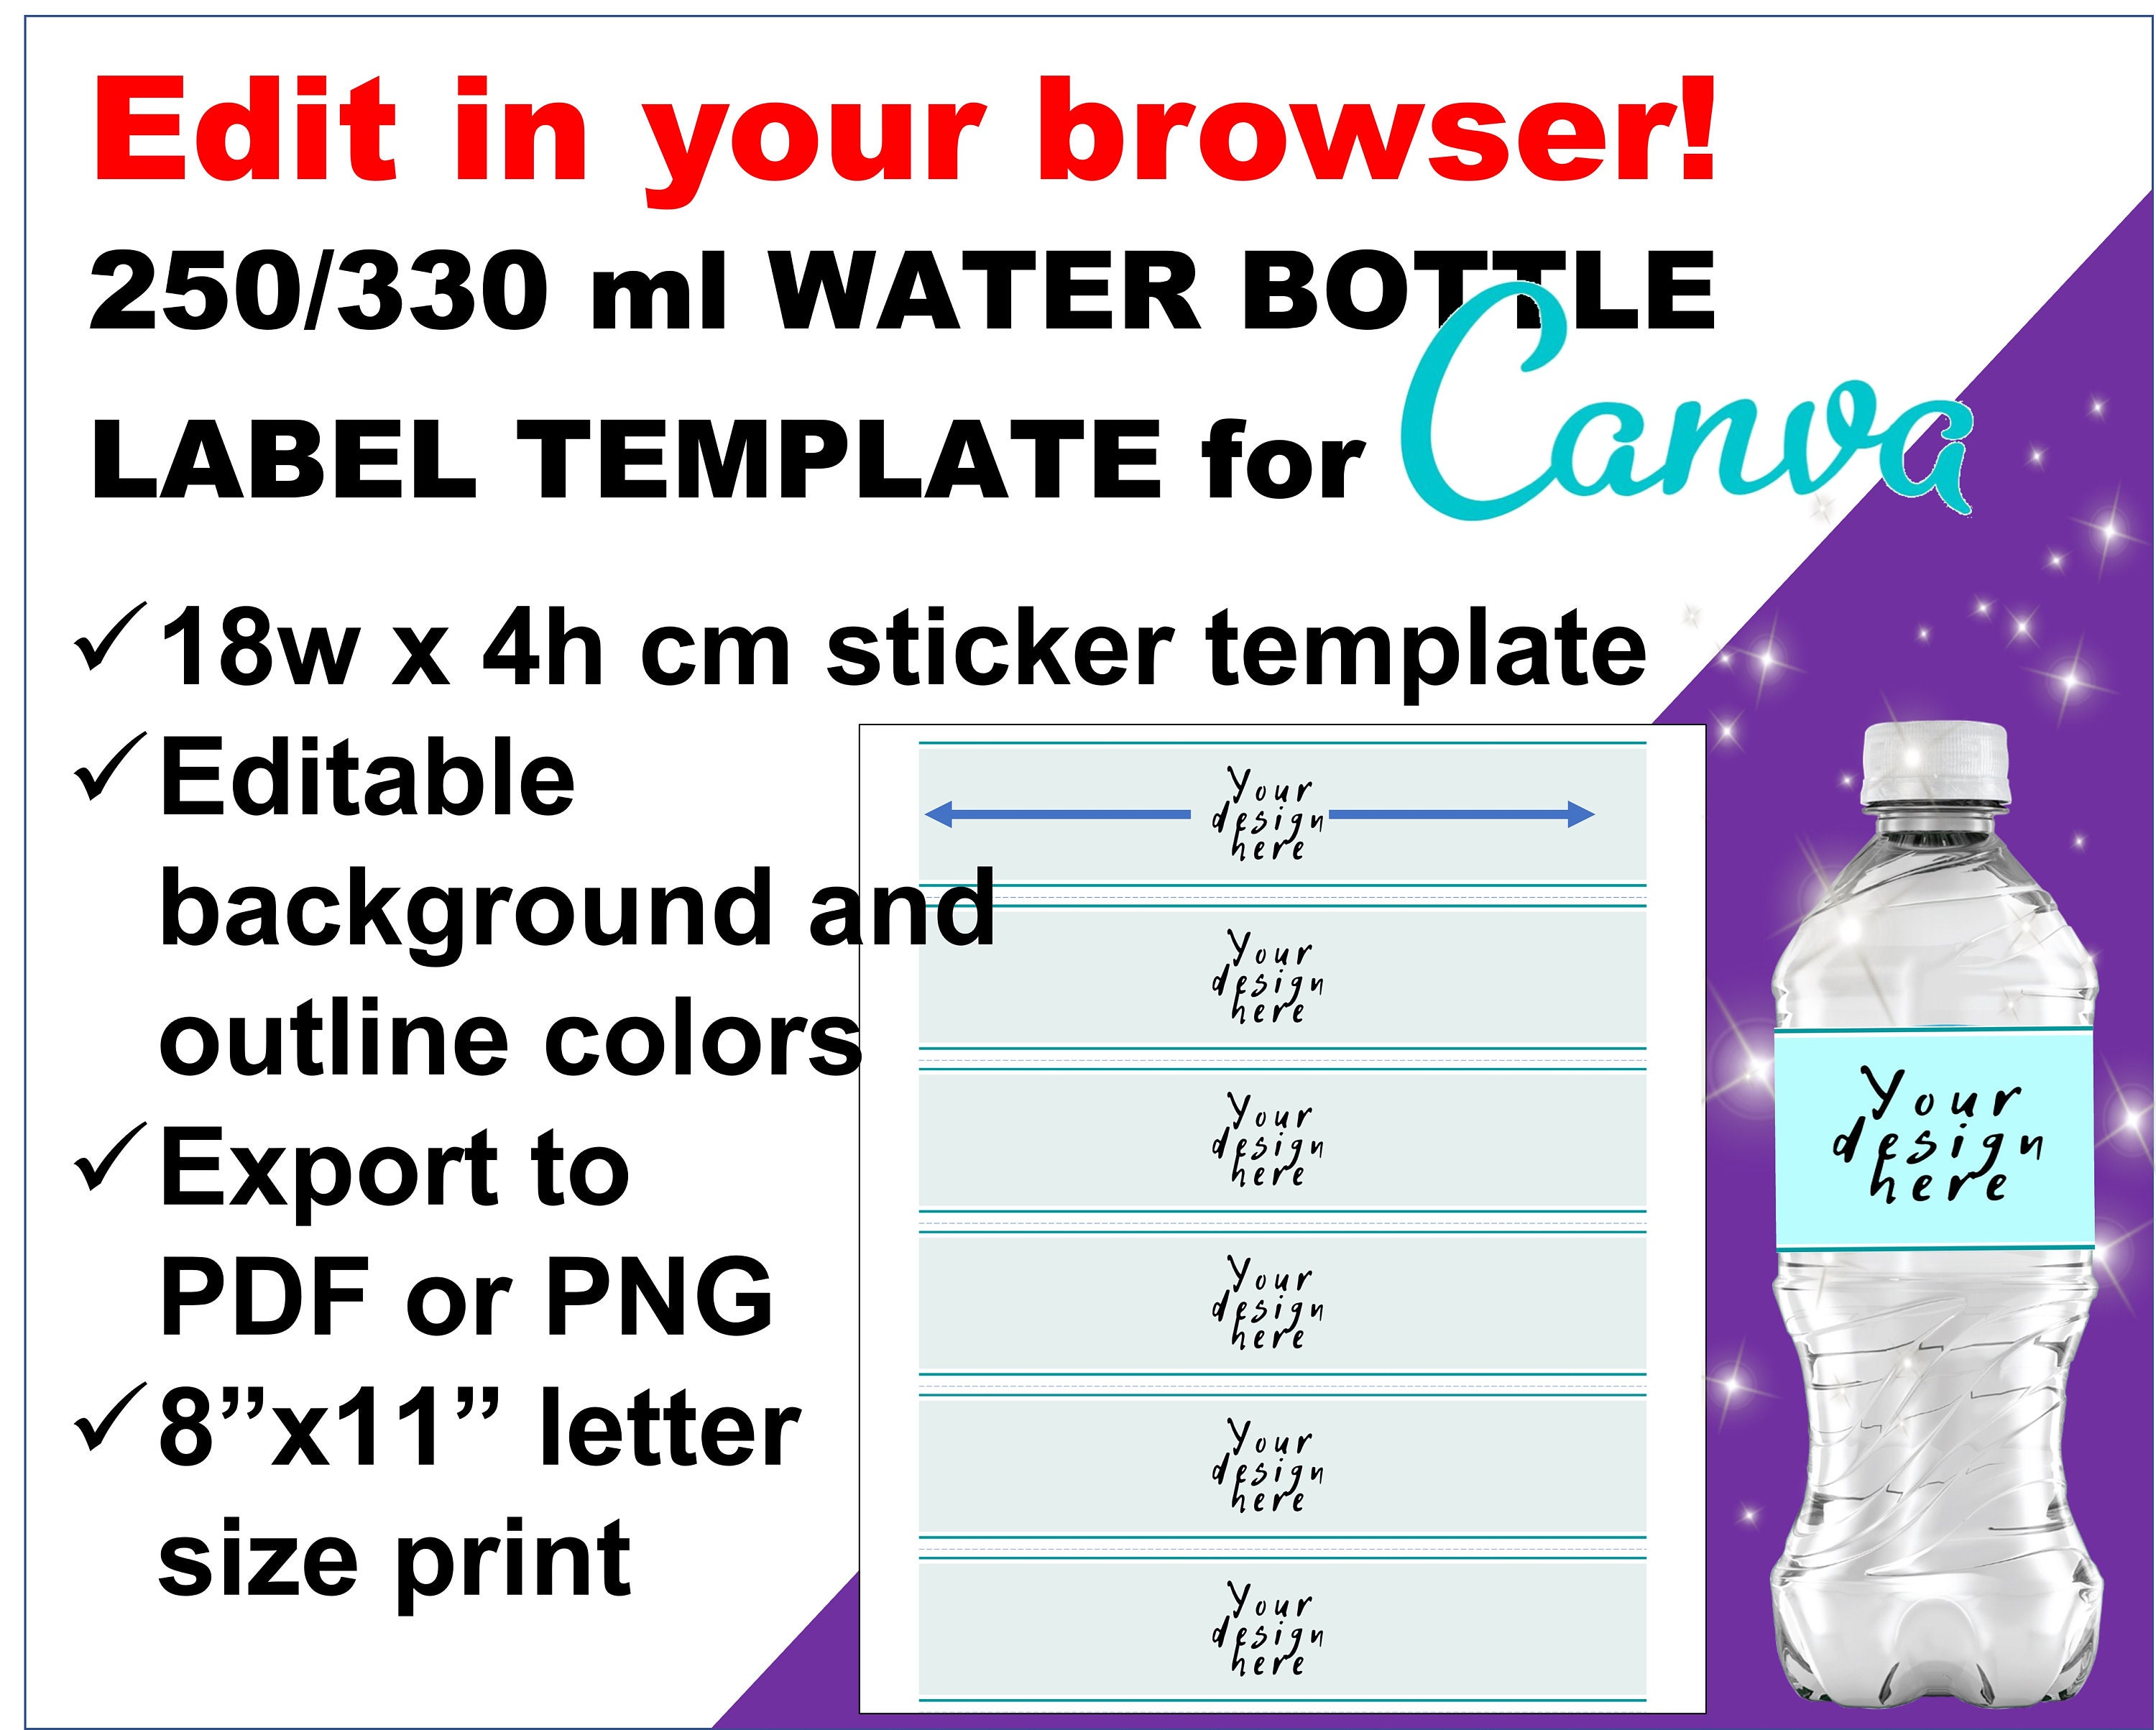 Comment lire l'étiquette d'une bouteille d'eau ?